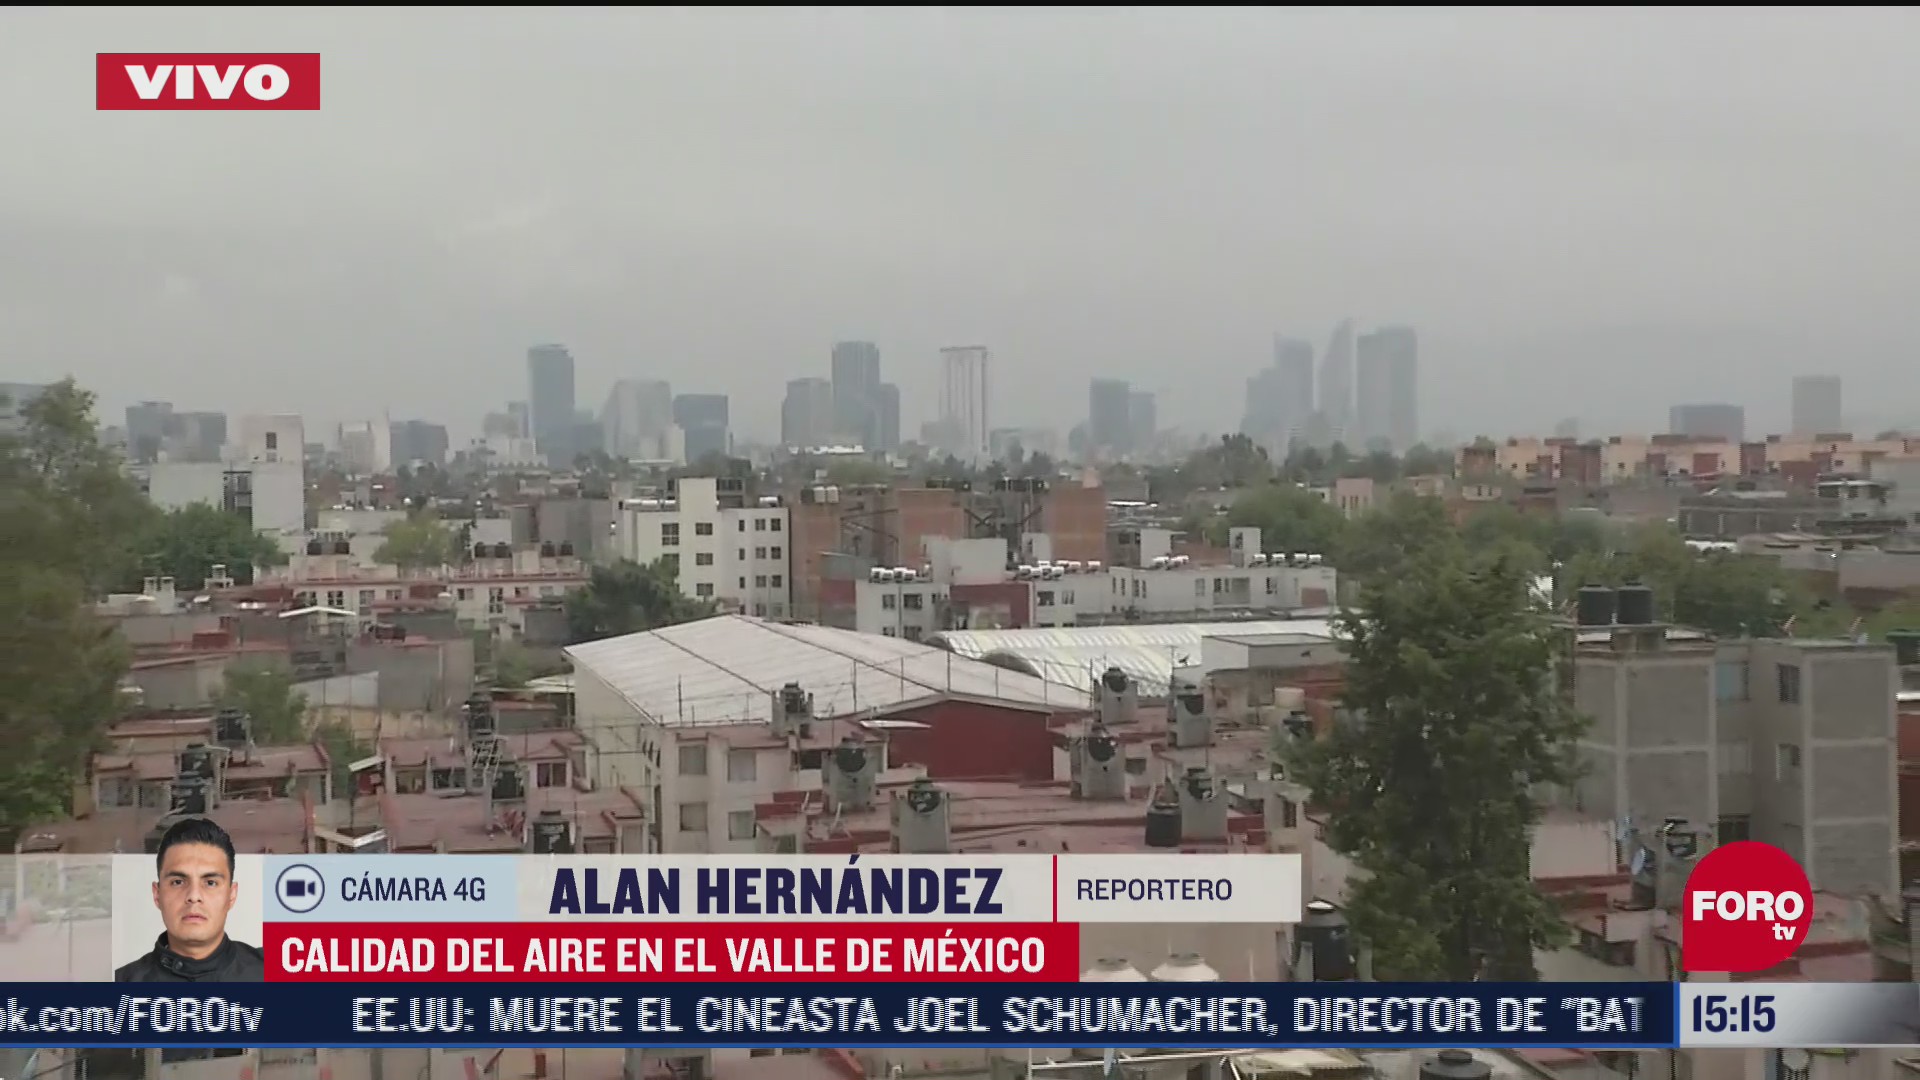 FOTO: se reporta de buena a mala la calidad del aire en valle de mexico